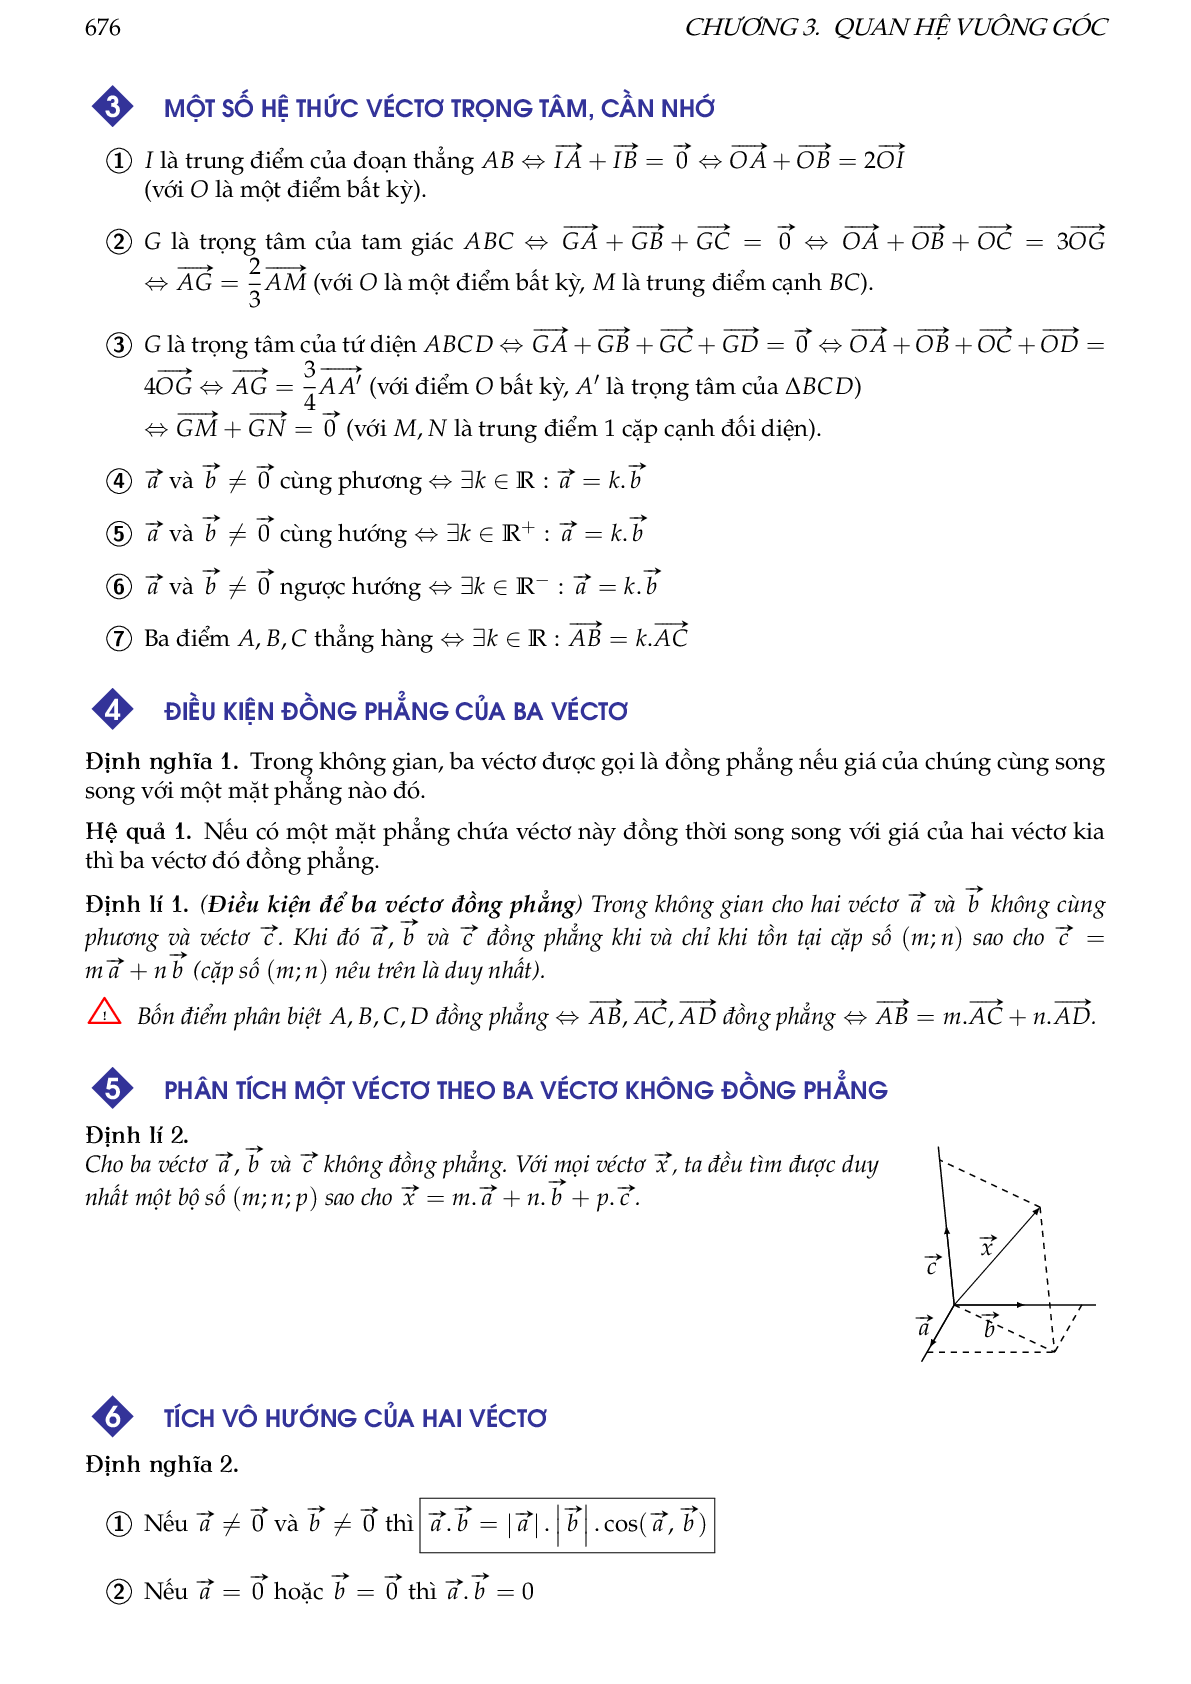 Hướng dẫn giải các dạng toán vectơ trong không gian, quan hệ vuông góc (trang 2)